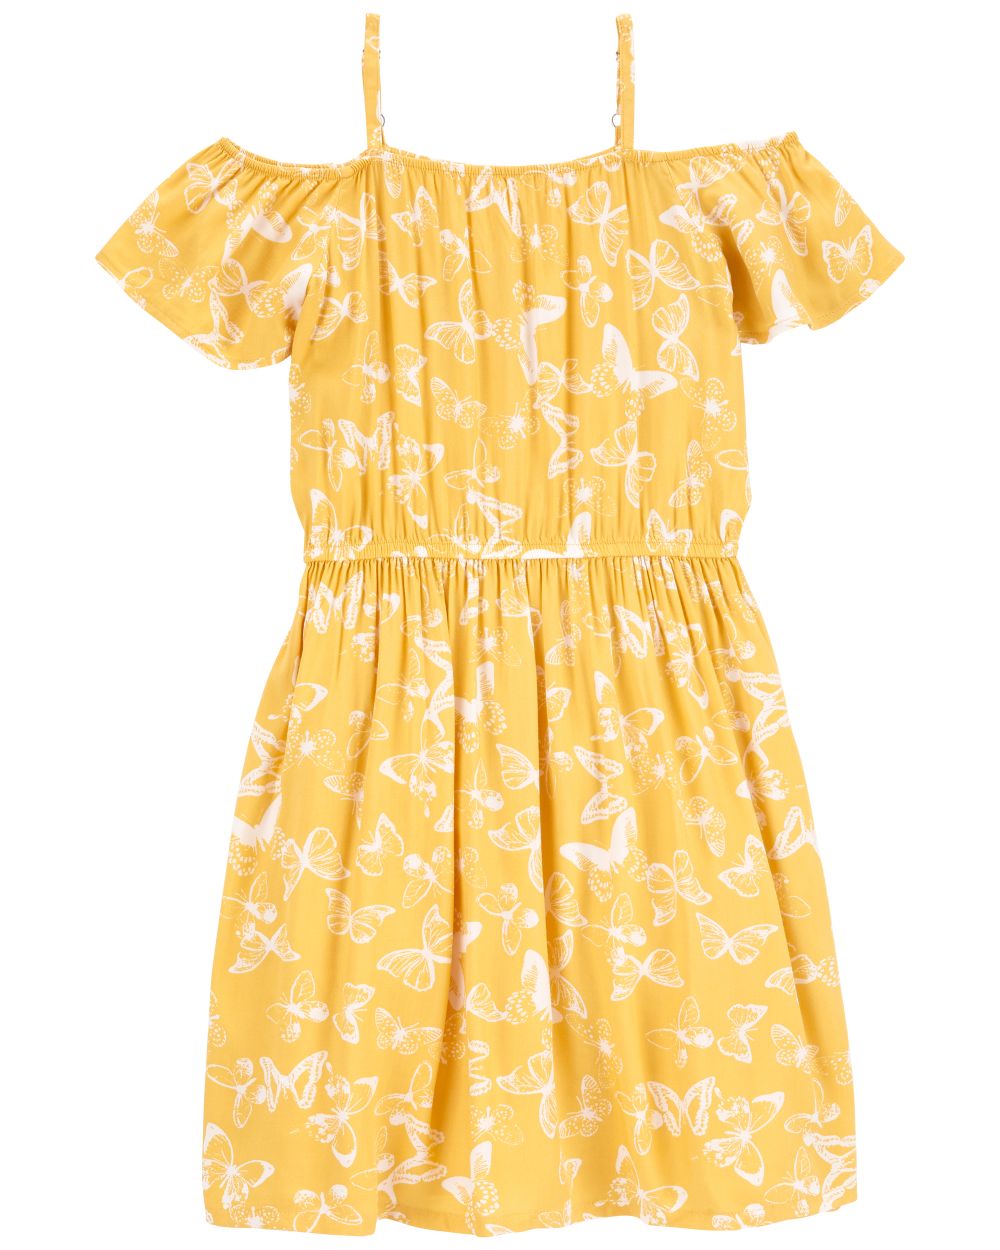 Vestido Niña (Carter's) Amarillo - 3 años – Stylish Boutique